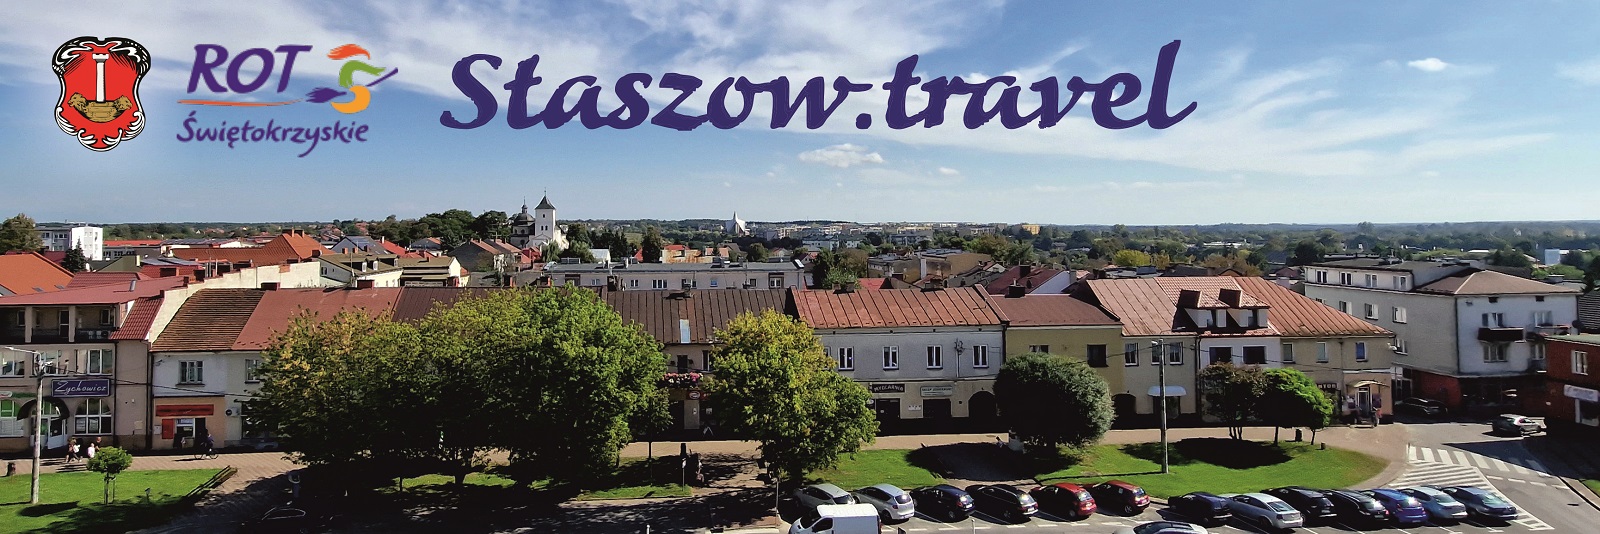 Staszow_Travel